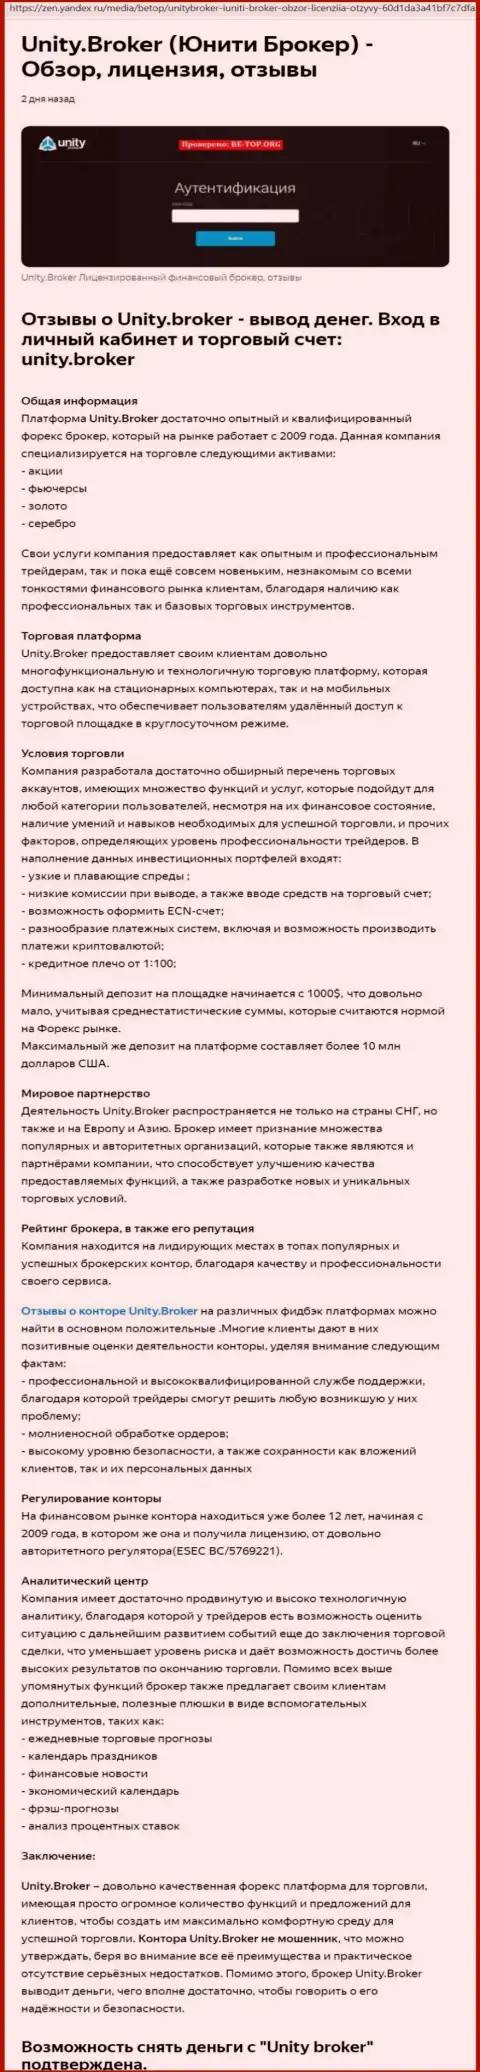 Разбор деятельности форекс брокерской компании Unity Broker на интернет-ресурсе Yandex Zen